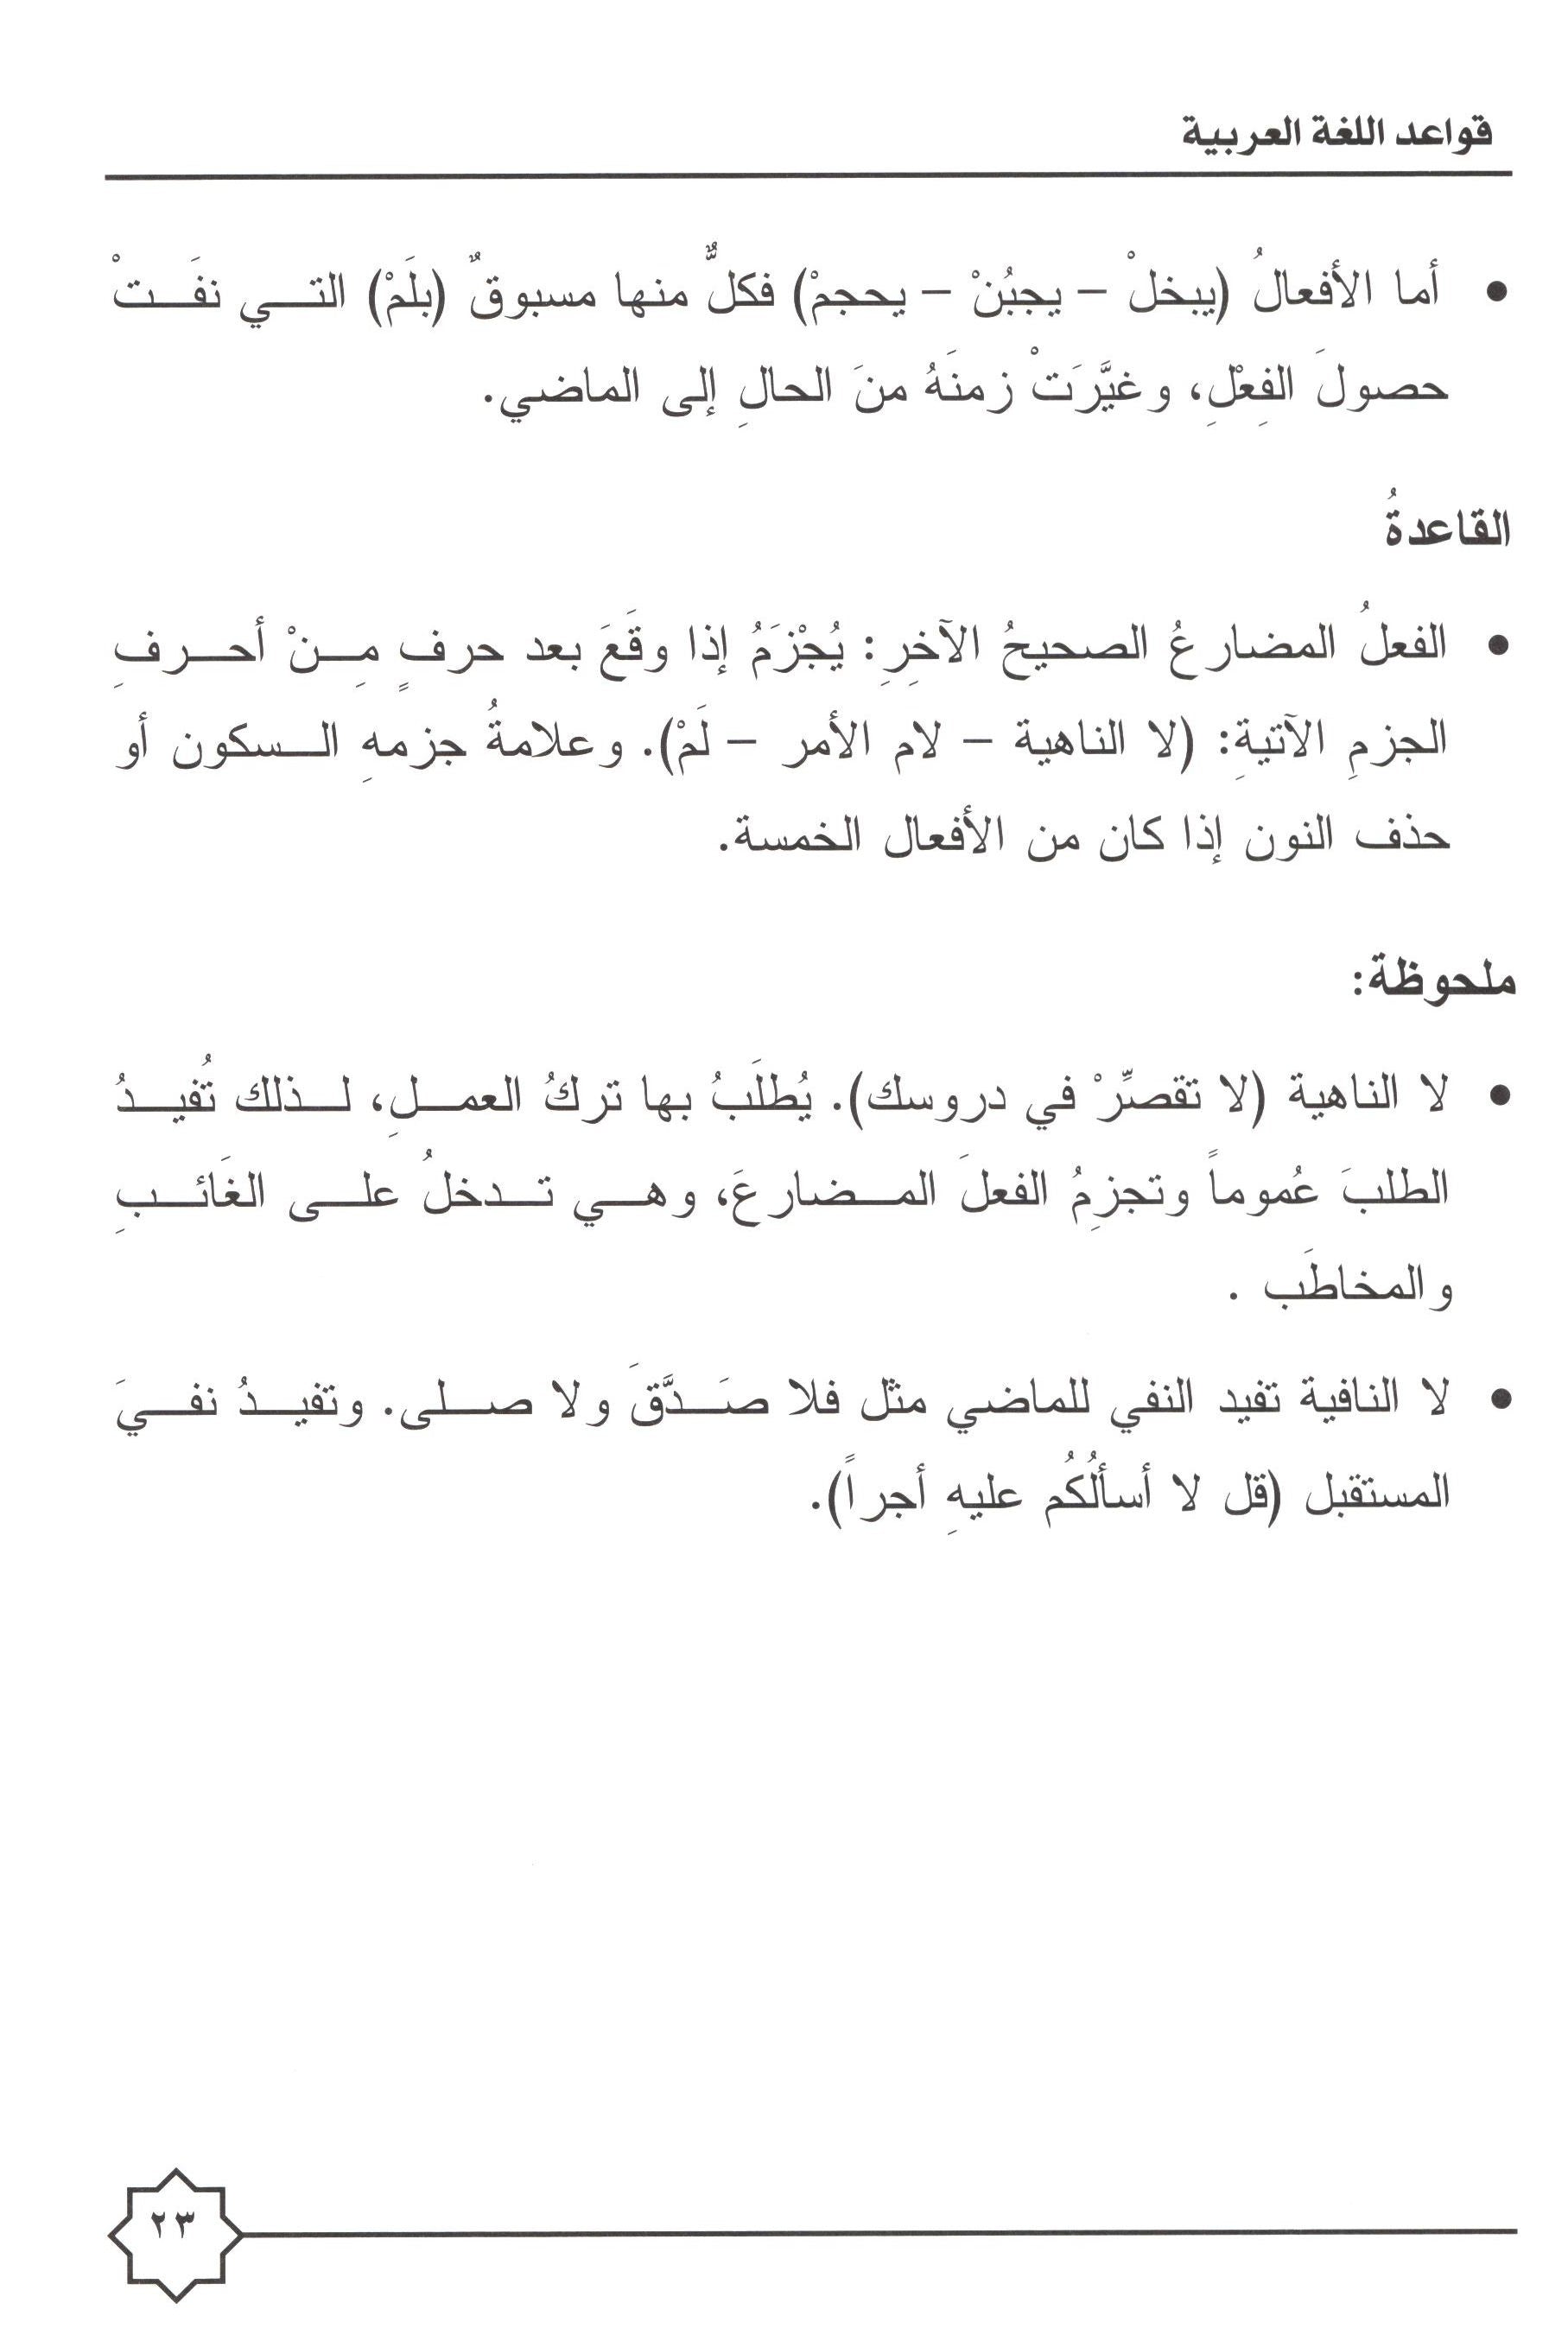 Al-Rowad Arabic Grammar Level 4 Part 2 تدريبات في قواعد اللّغة العربيّة